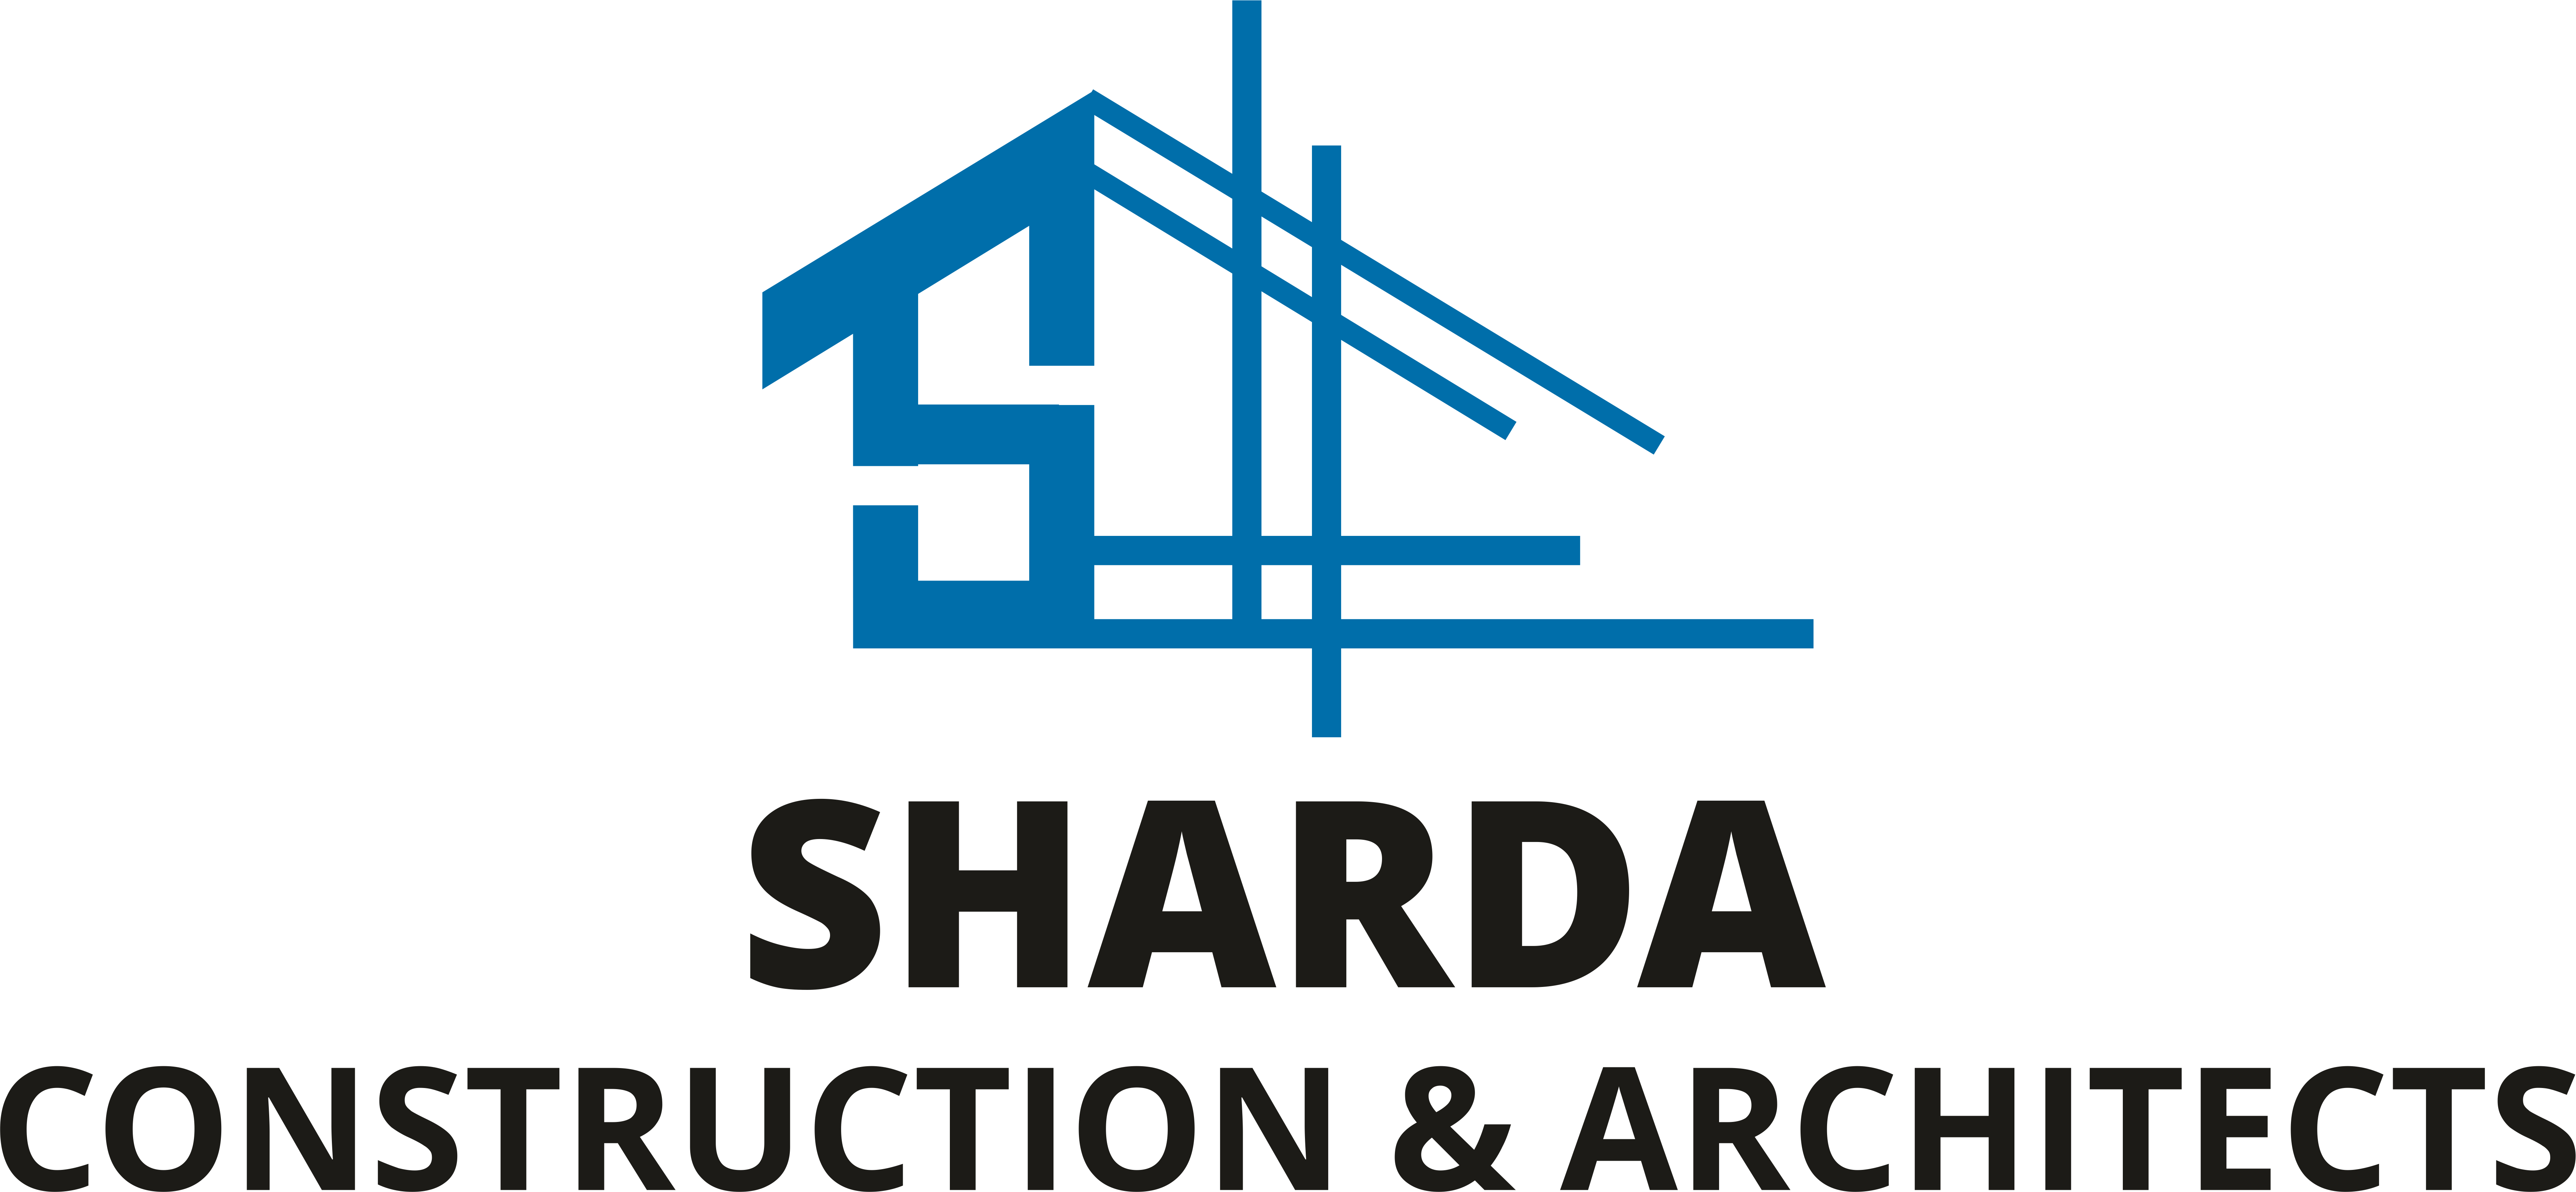 Sharda Construction & Architects in Dehradun | Home Construction Company